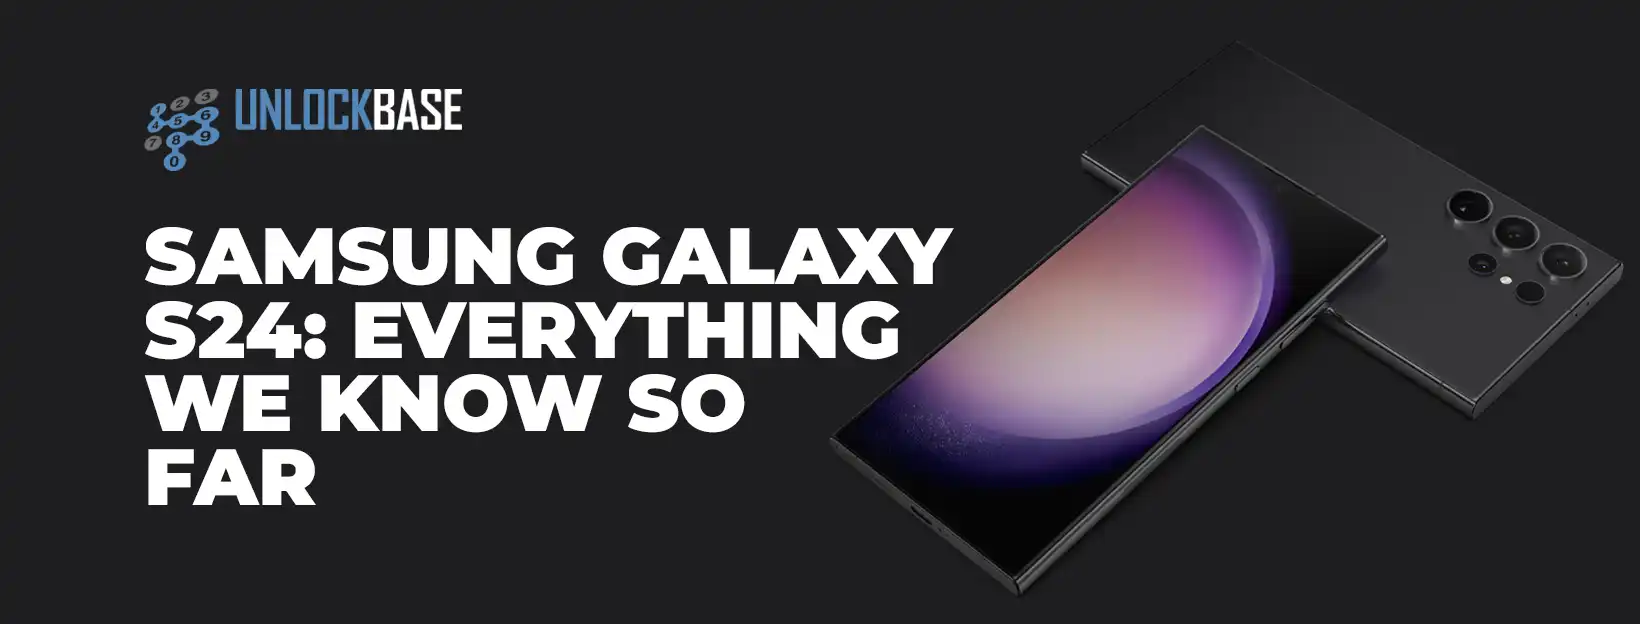 Samsung Galaxy S24: Everything we know so far - UnlockBase